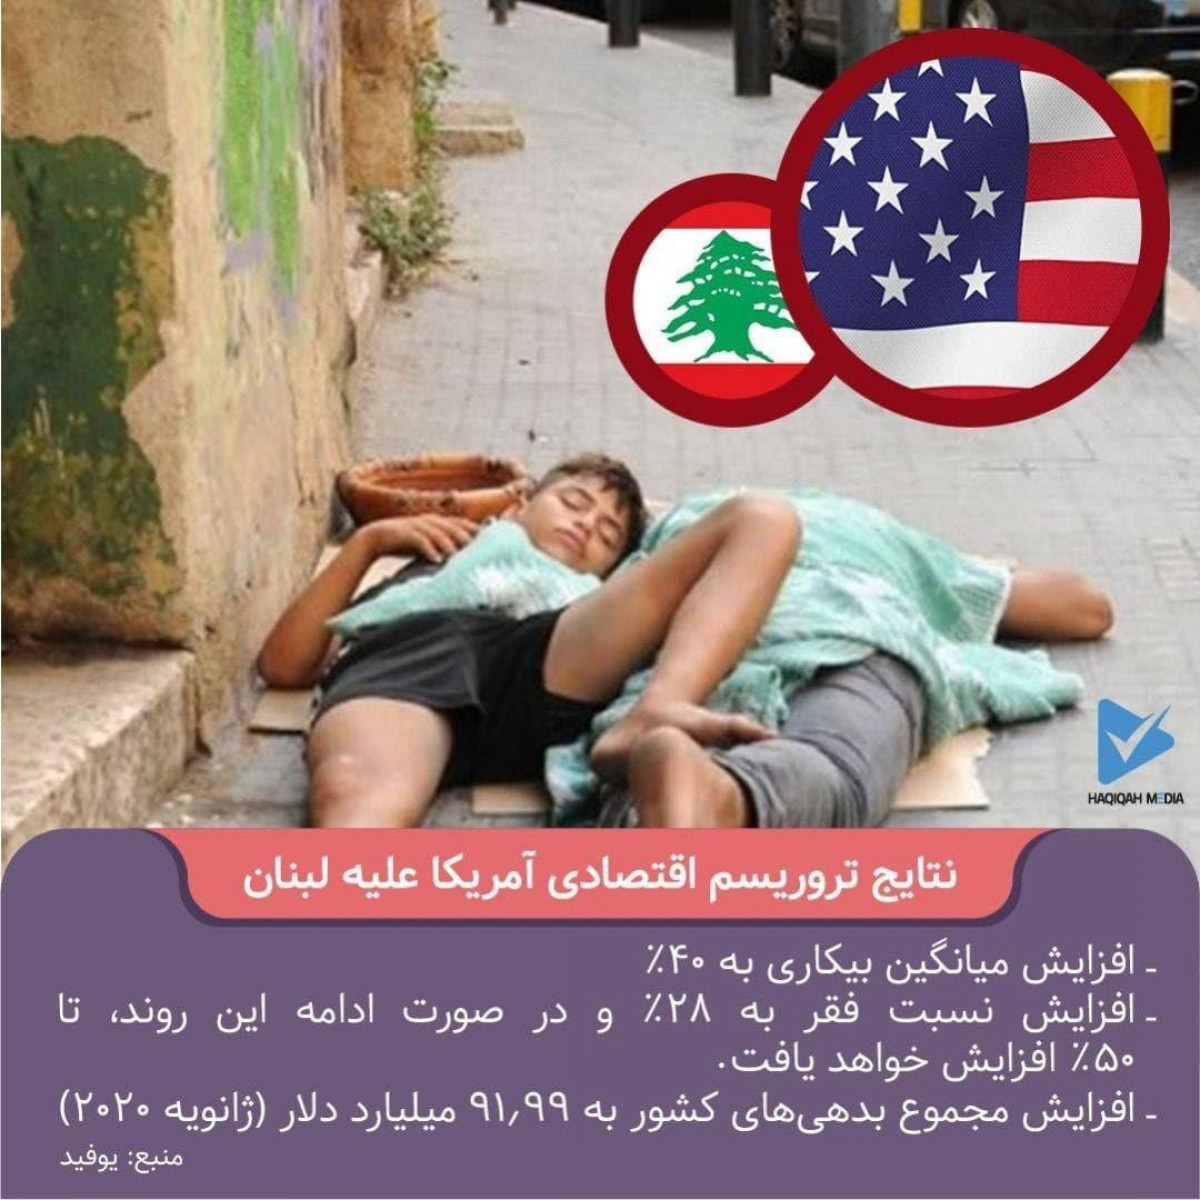 نتایج تروریسم اقتصادی آمریکا علیه لبنان